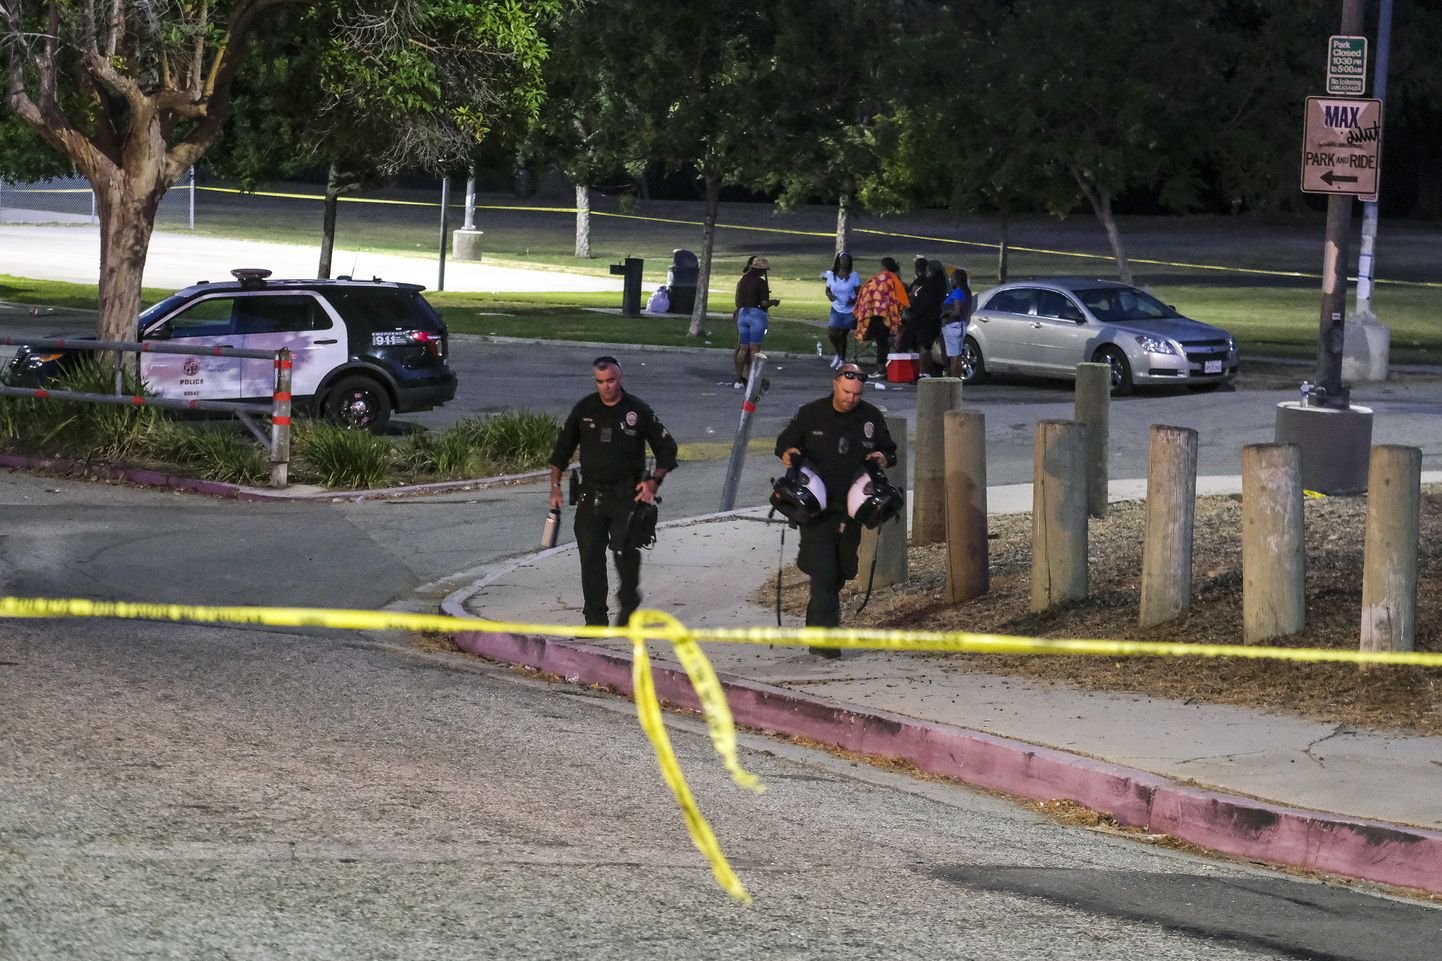 USA politsei Peck Parkis, California osariigis 24. juulil, kus samuti toimus tulistamine. Foto on illustratiivne.